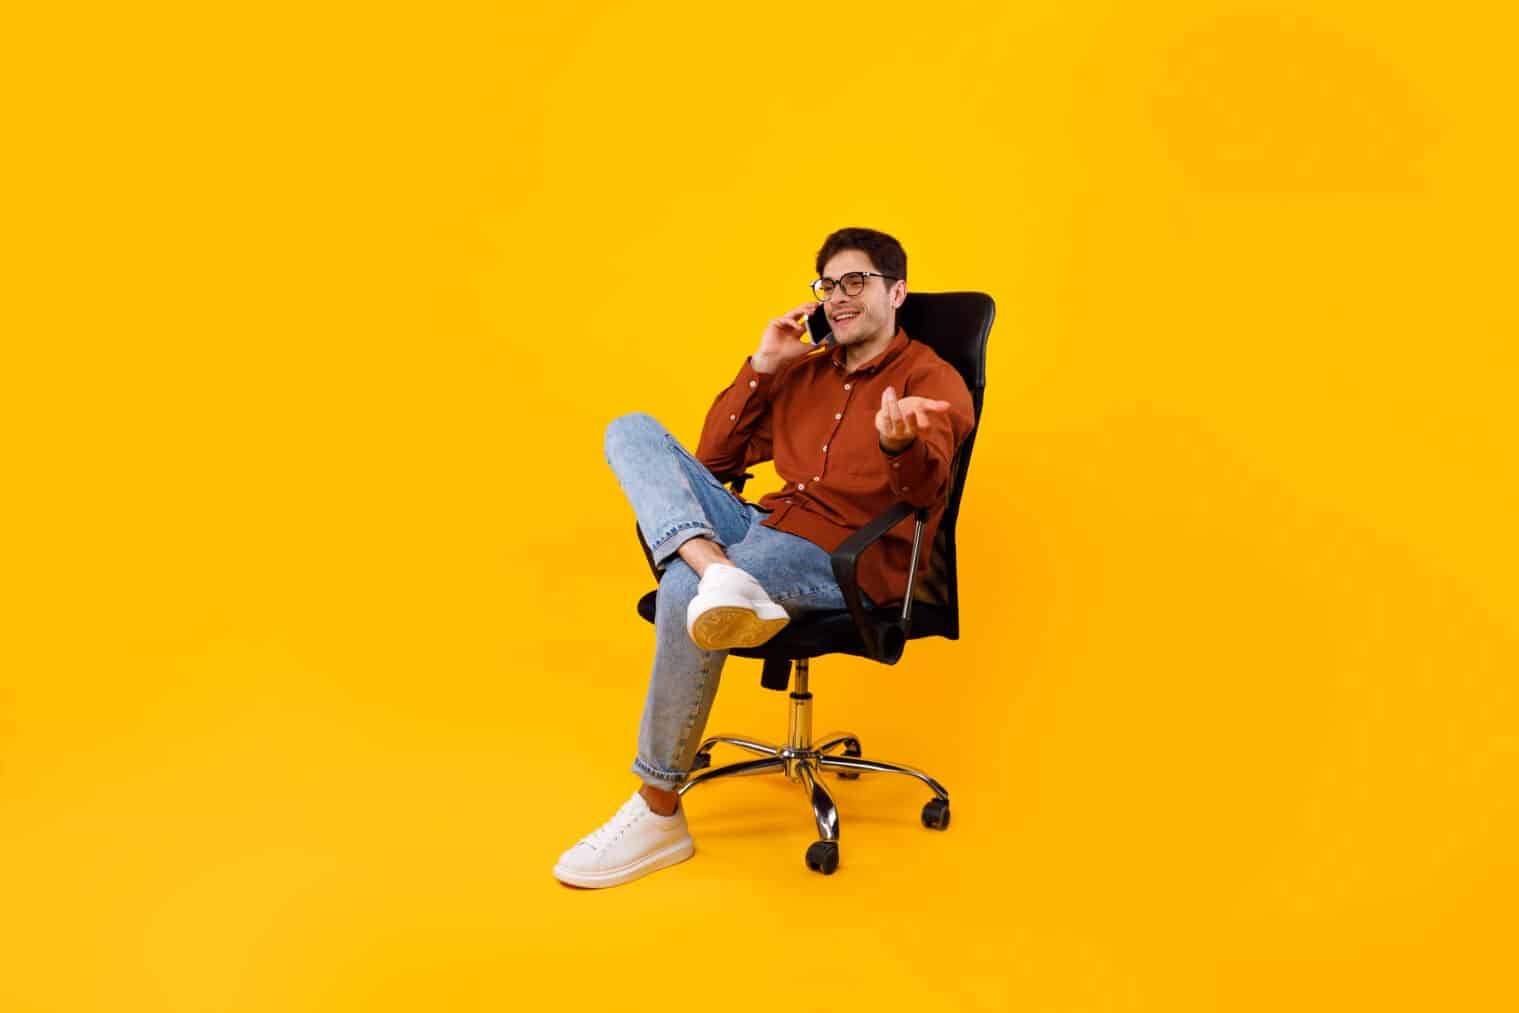 Business Man Talking On Phone Sitting In Chair Over Yellow Studio Background. Mann kommuniziert mit angenehmen Handy-Gespräch. Moderne mobile Kommunikation Konzept. Volle Länge Schuss